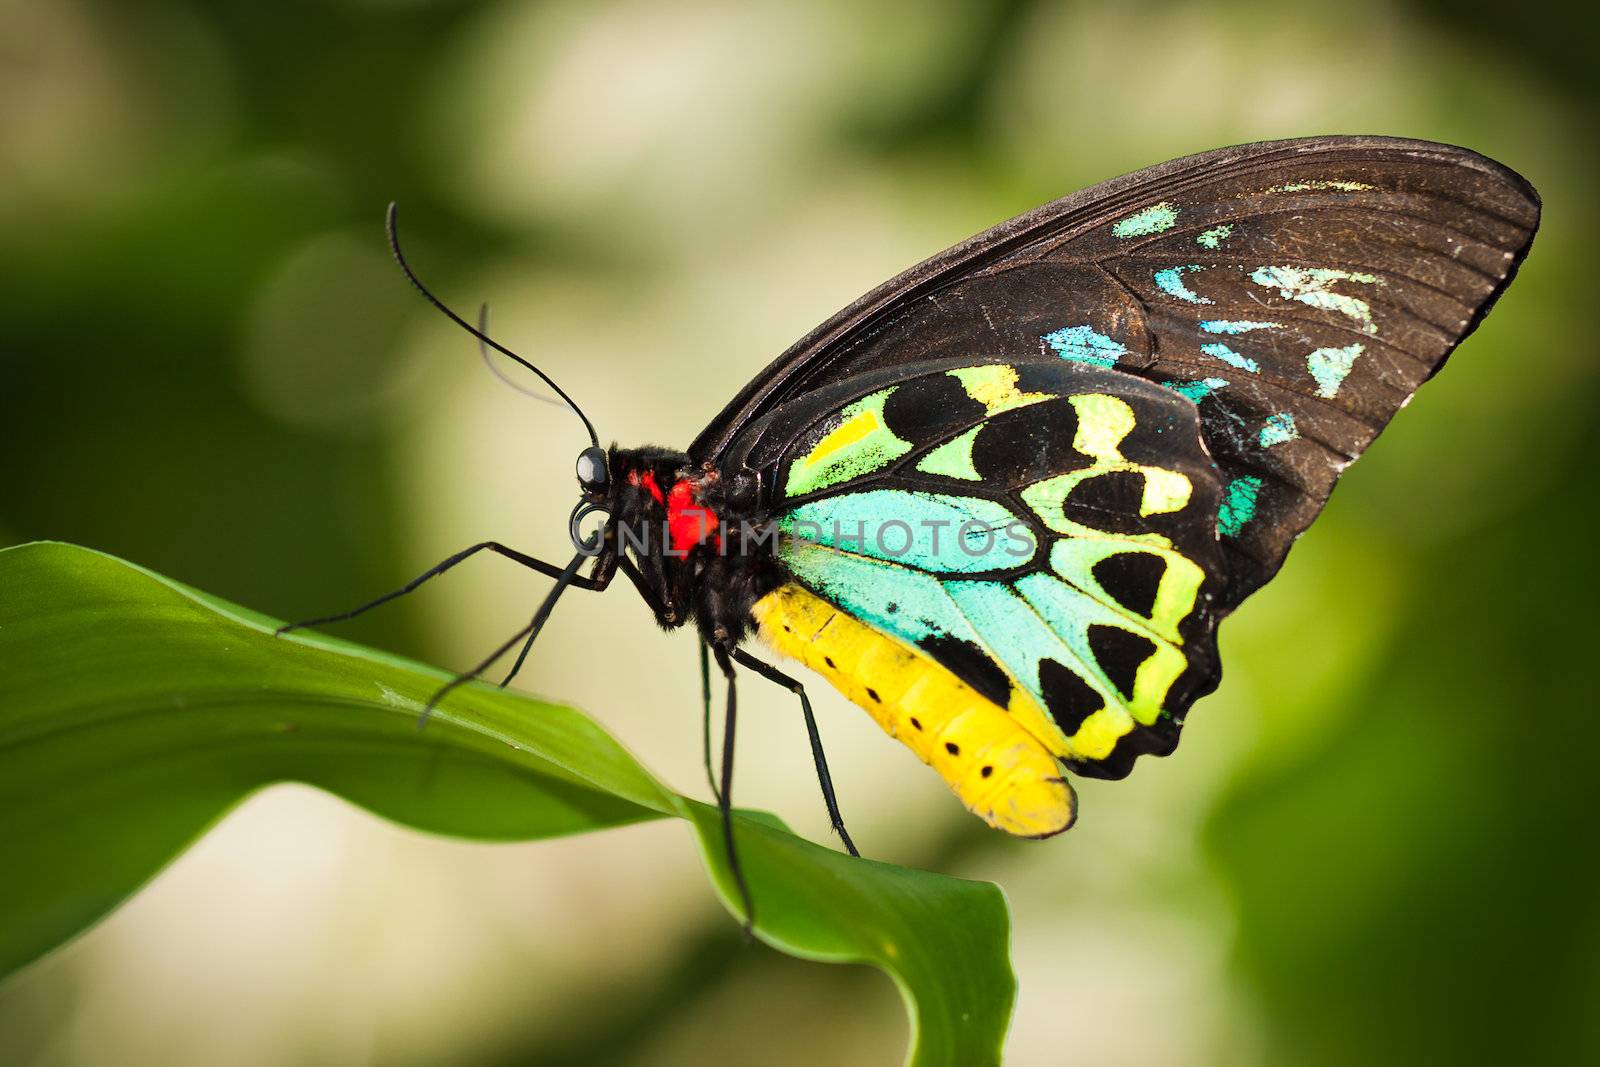 Birdwing butterfly by Jaykayl